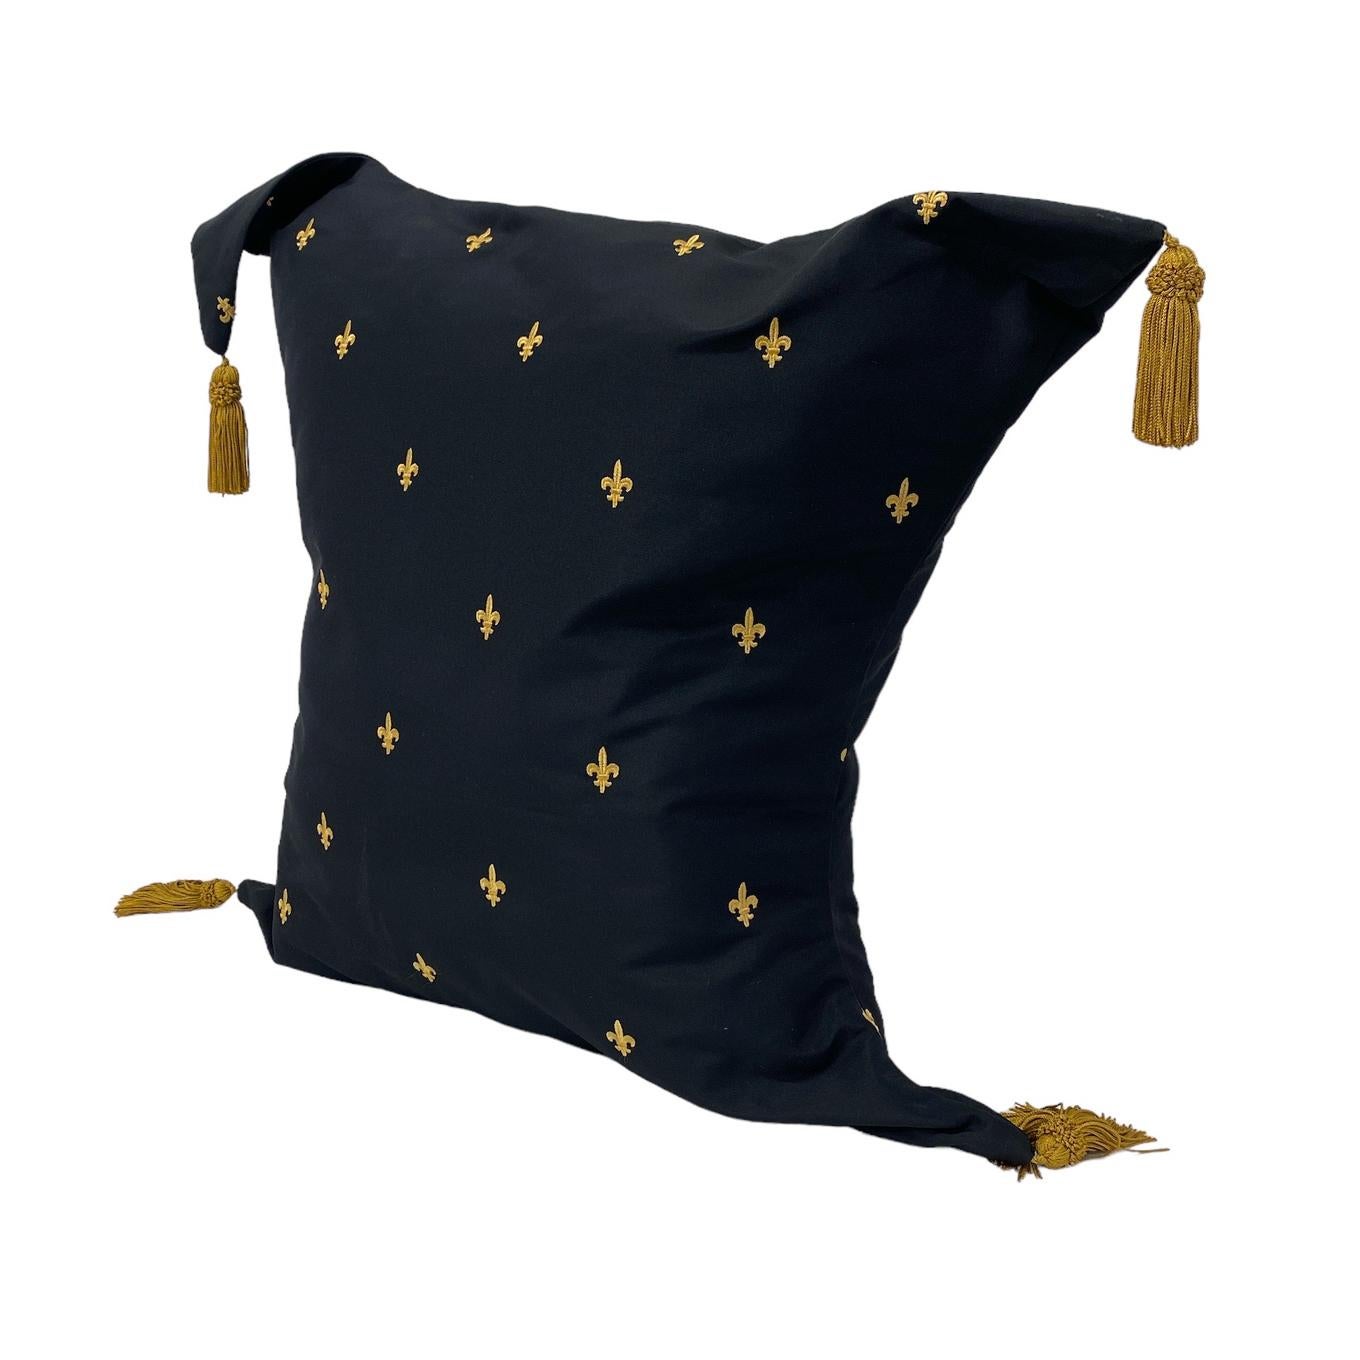 American Midnight Black & Gold Fleur-de-Lis Pattern Decorative Pillow  For Sale